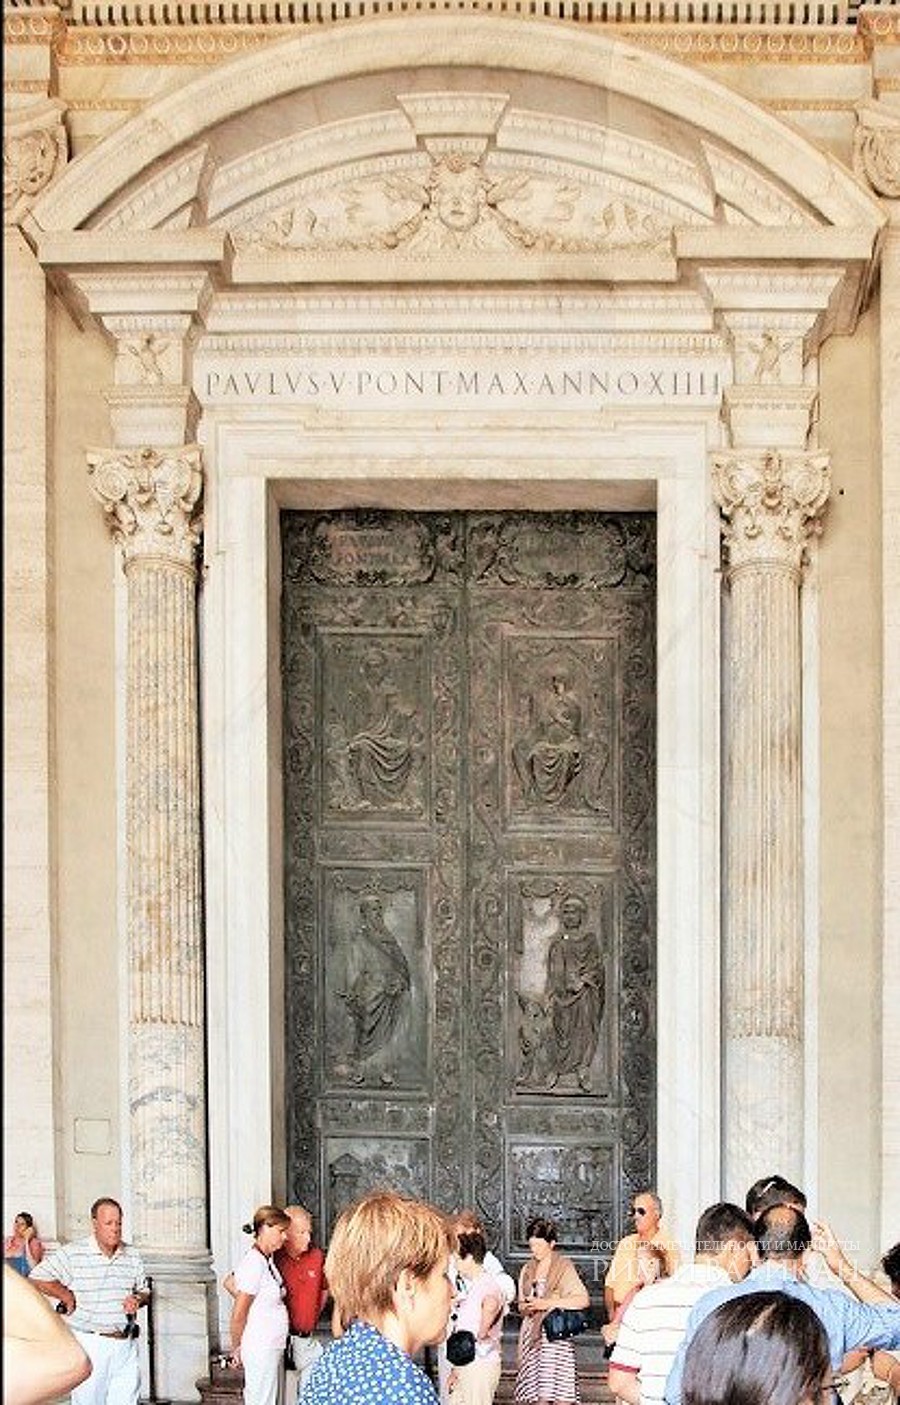 Врата Филарета в главном Соборе Ватикана